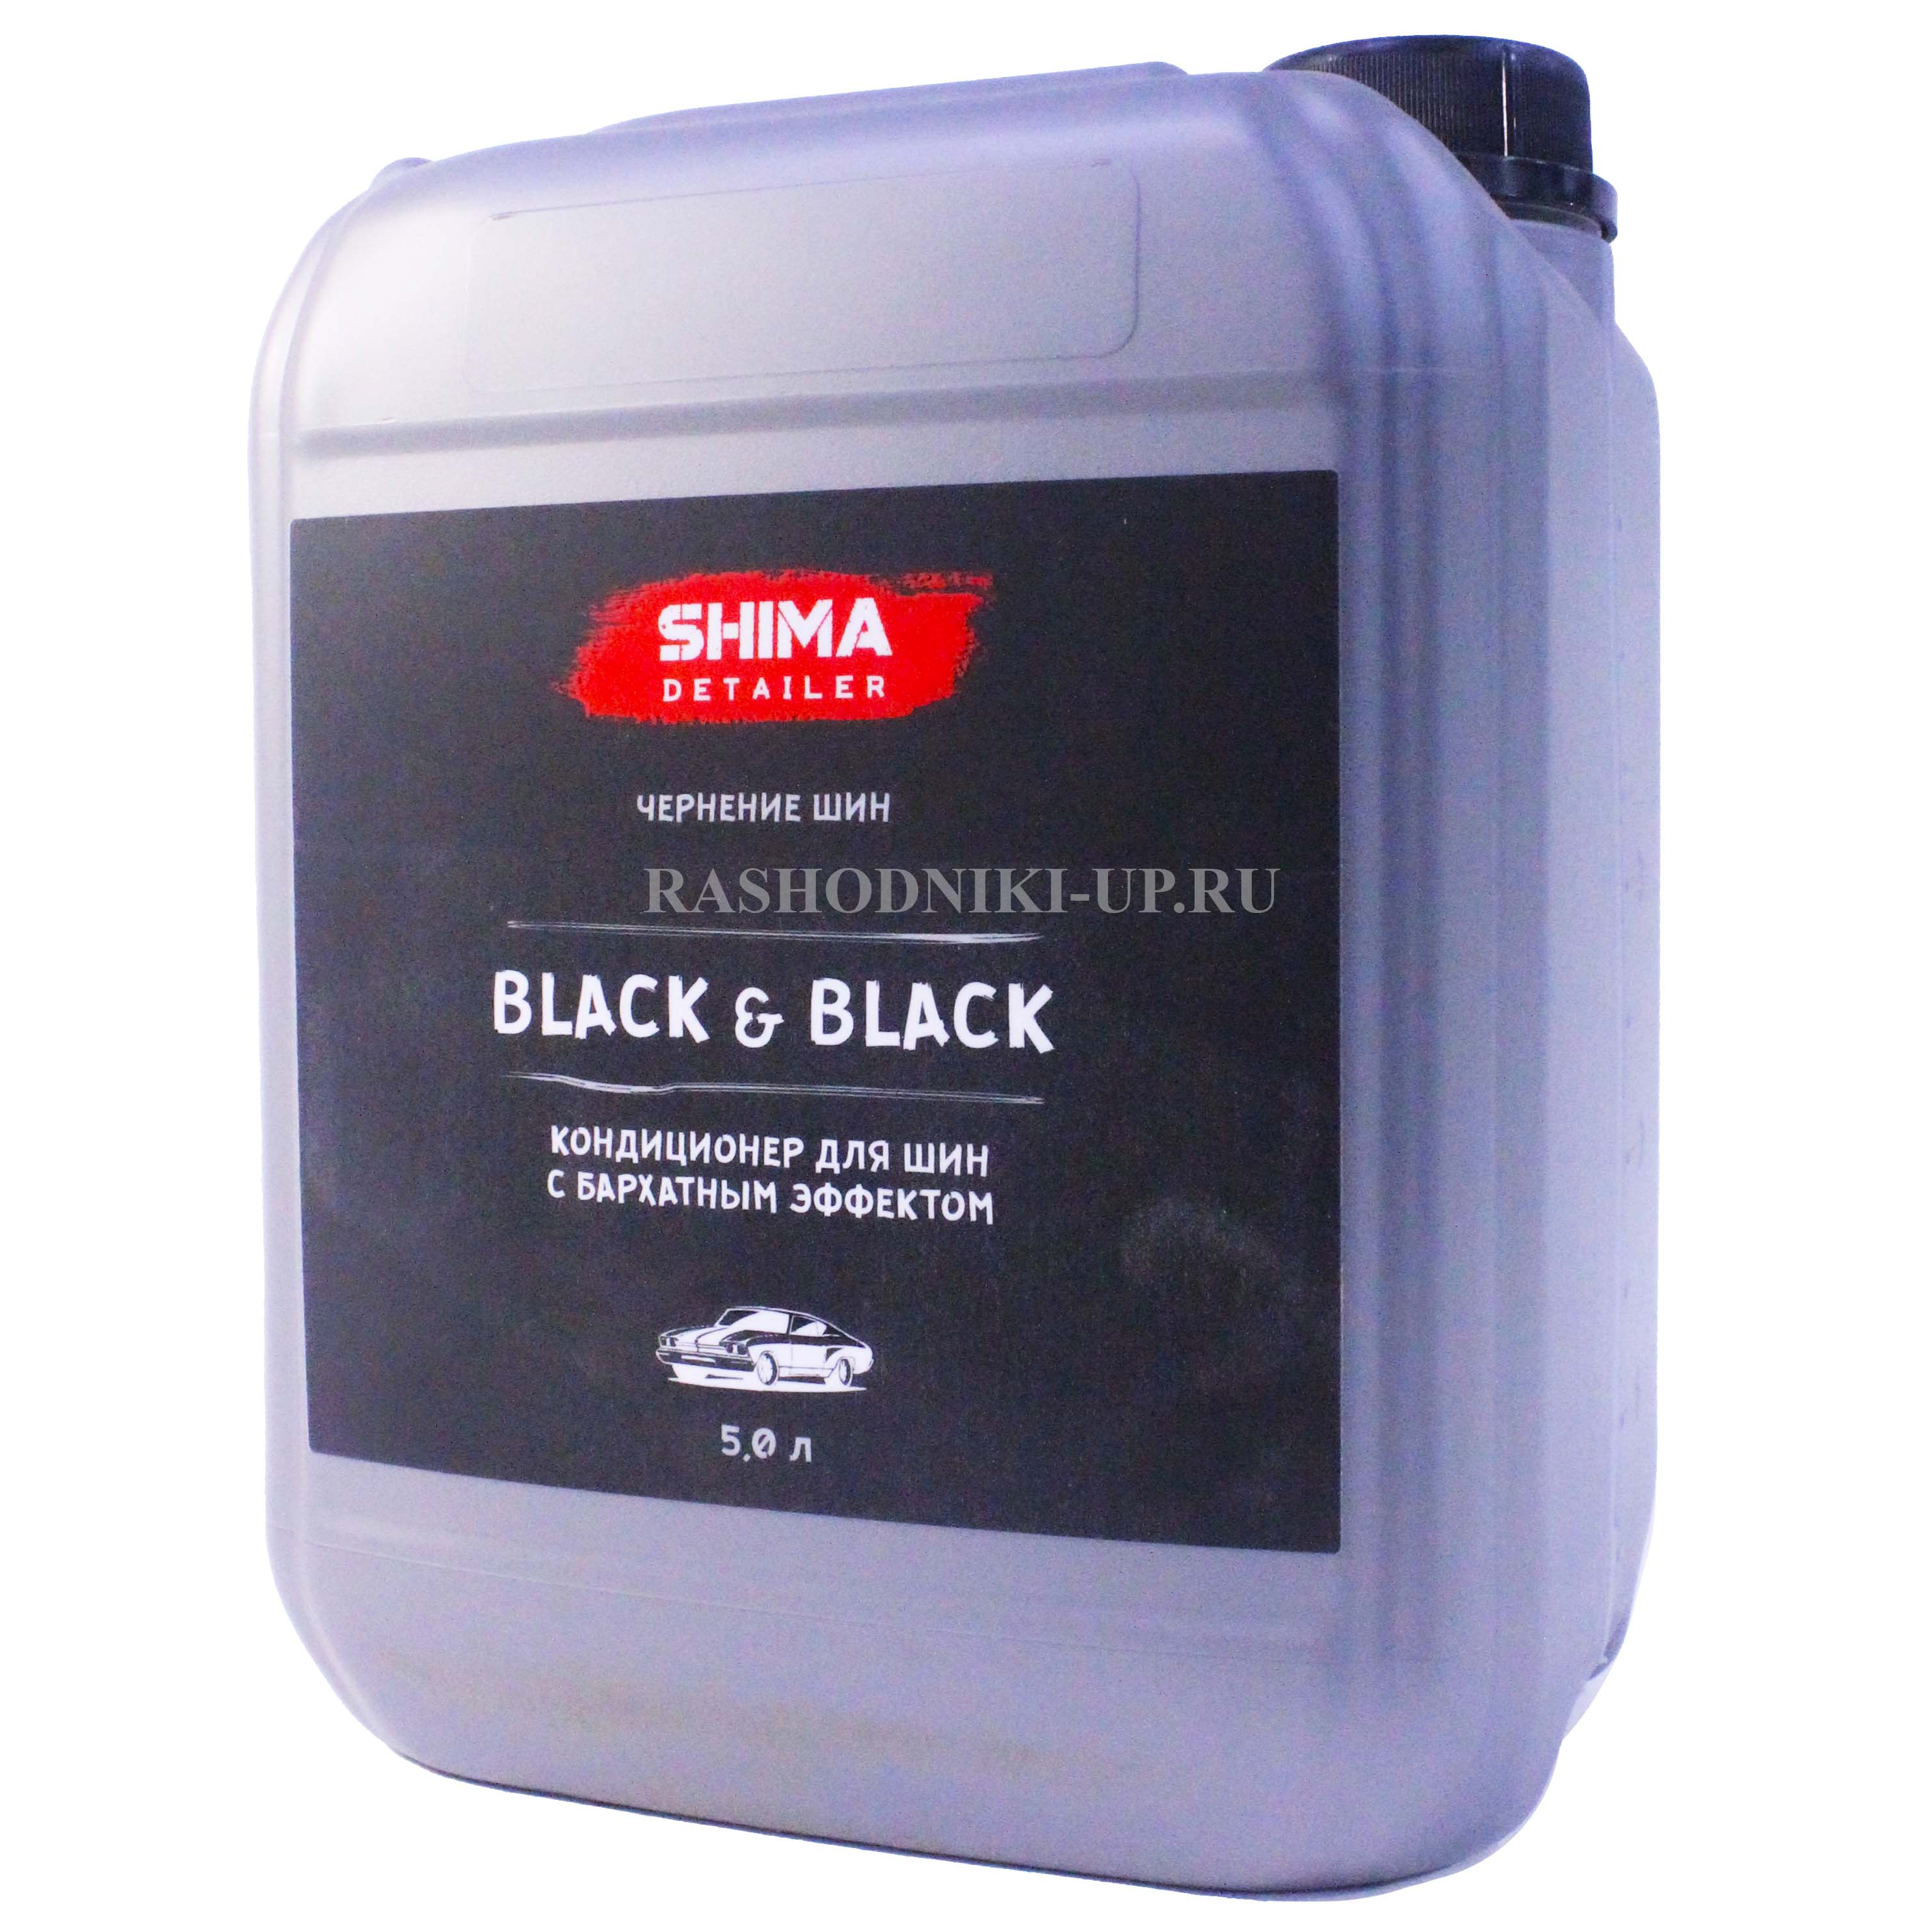 SHIMA DETAILER BLACK&BLACK Кондиционер для шин 5л